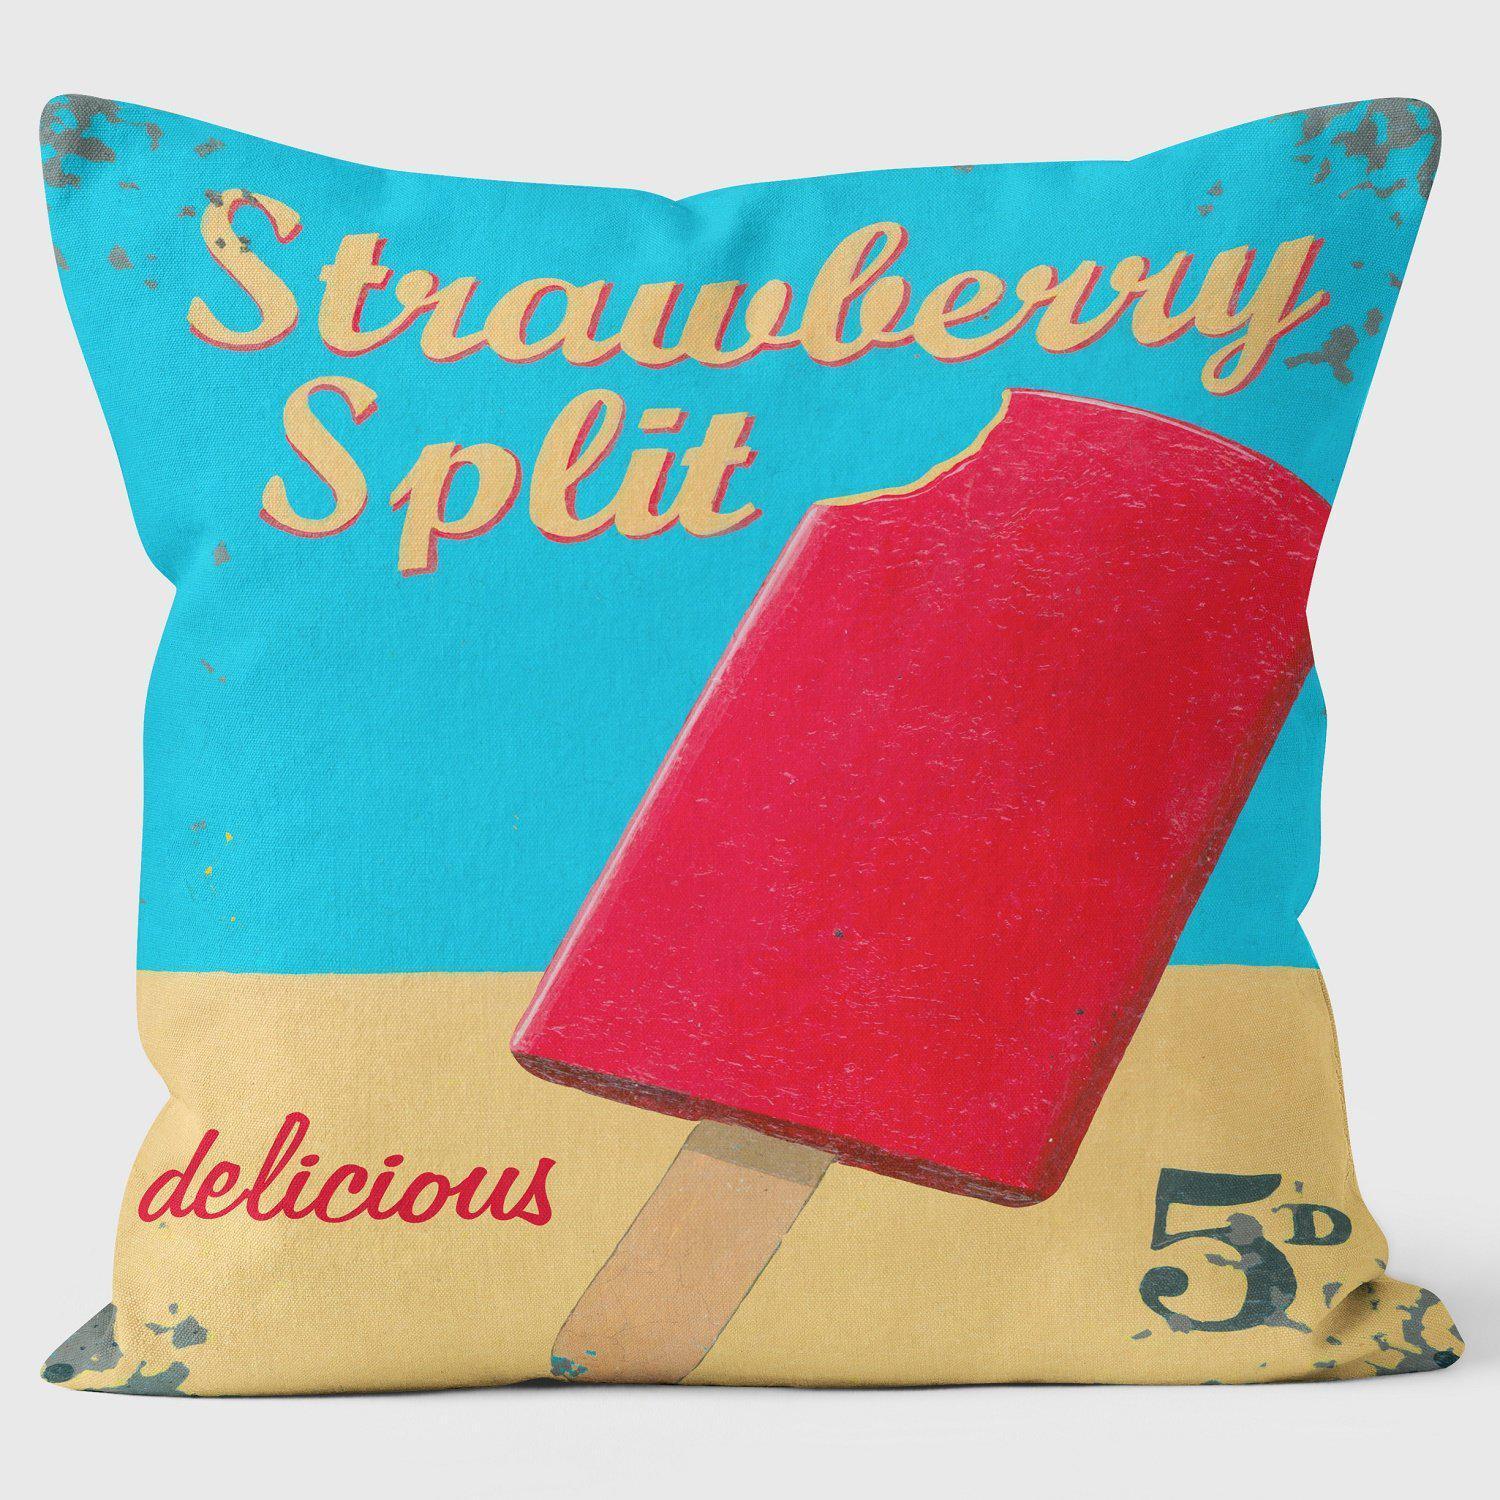 Strawberry Split - Martin Wiscombe - Art Print Cushion - Handmade Cushions UK - WeLoveCushions